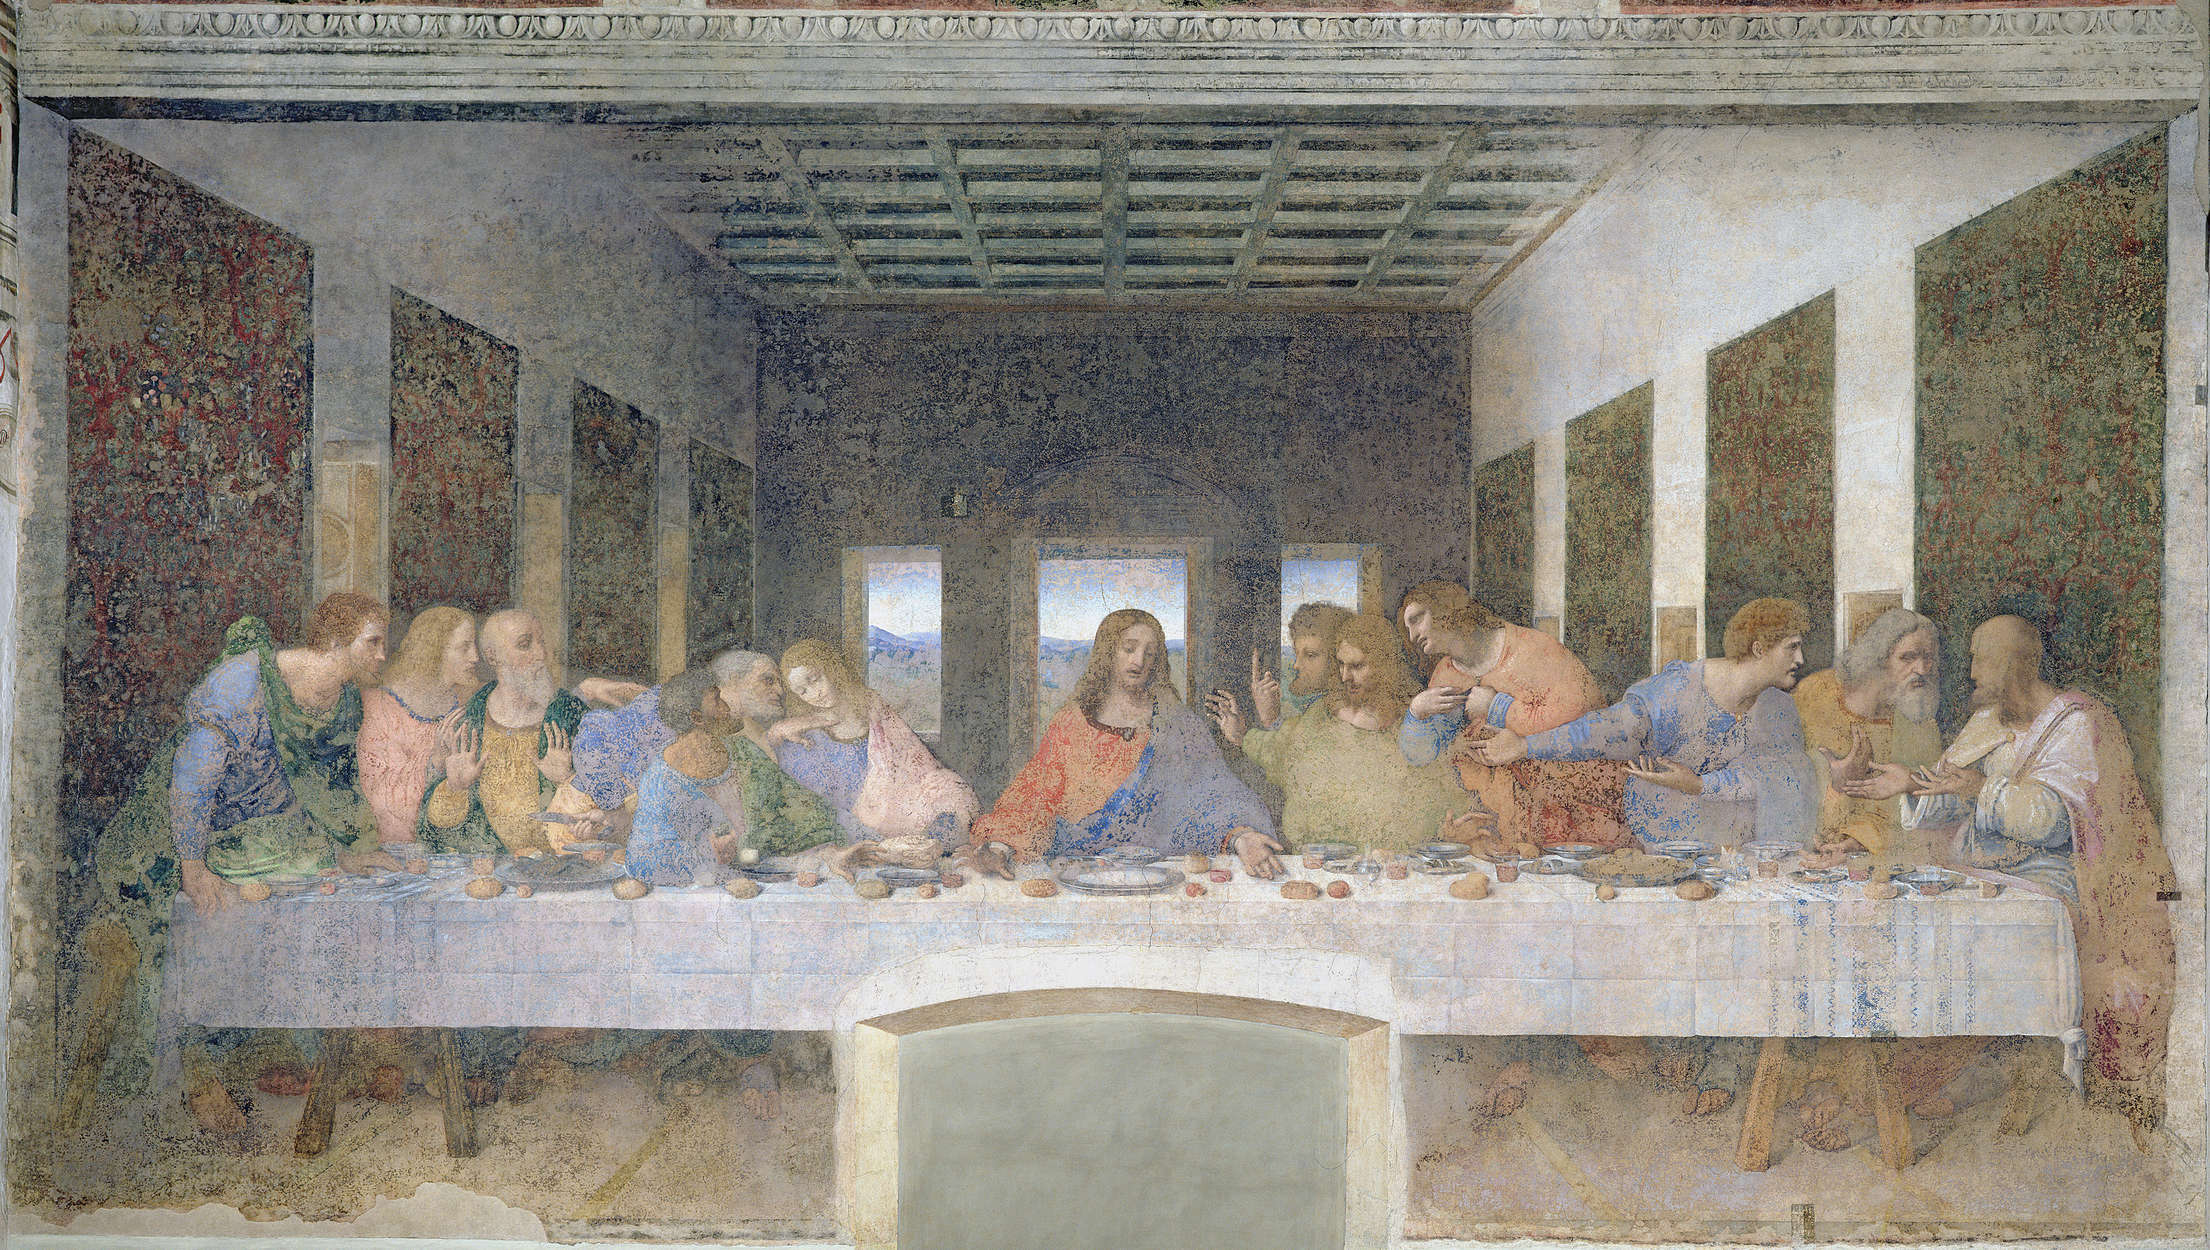             Papier peint panoramique "La Cène" de Léonard de Vinci
        